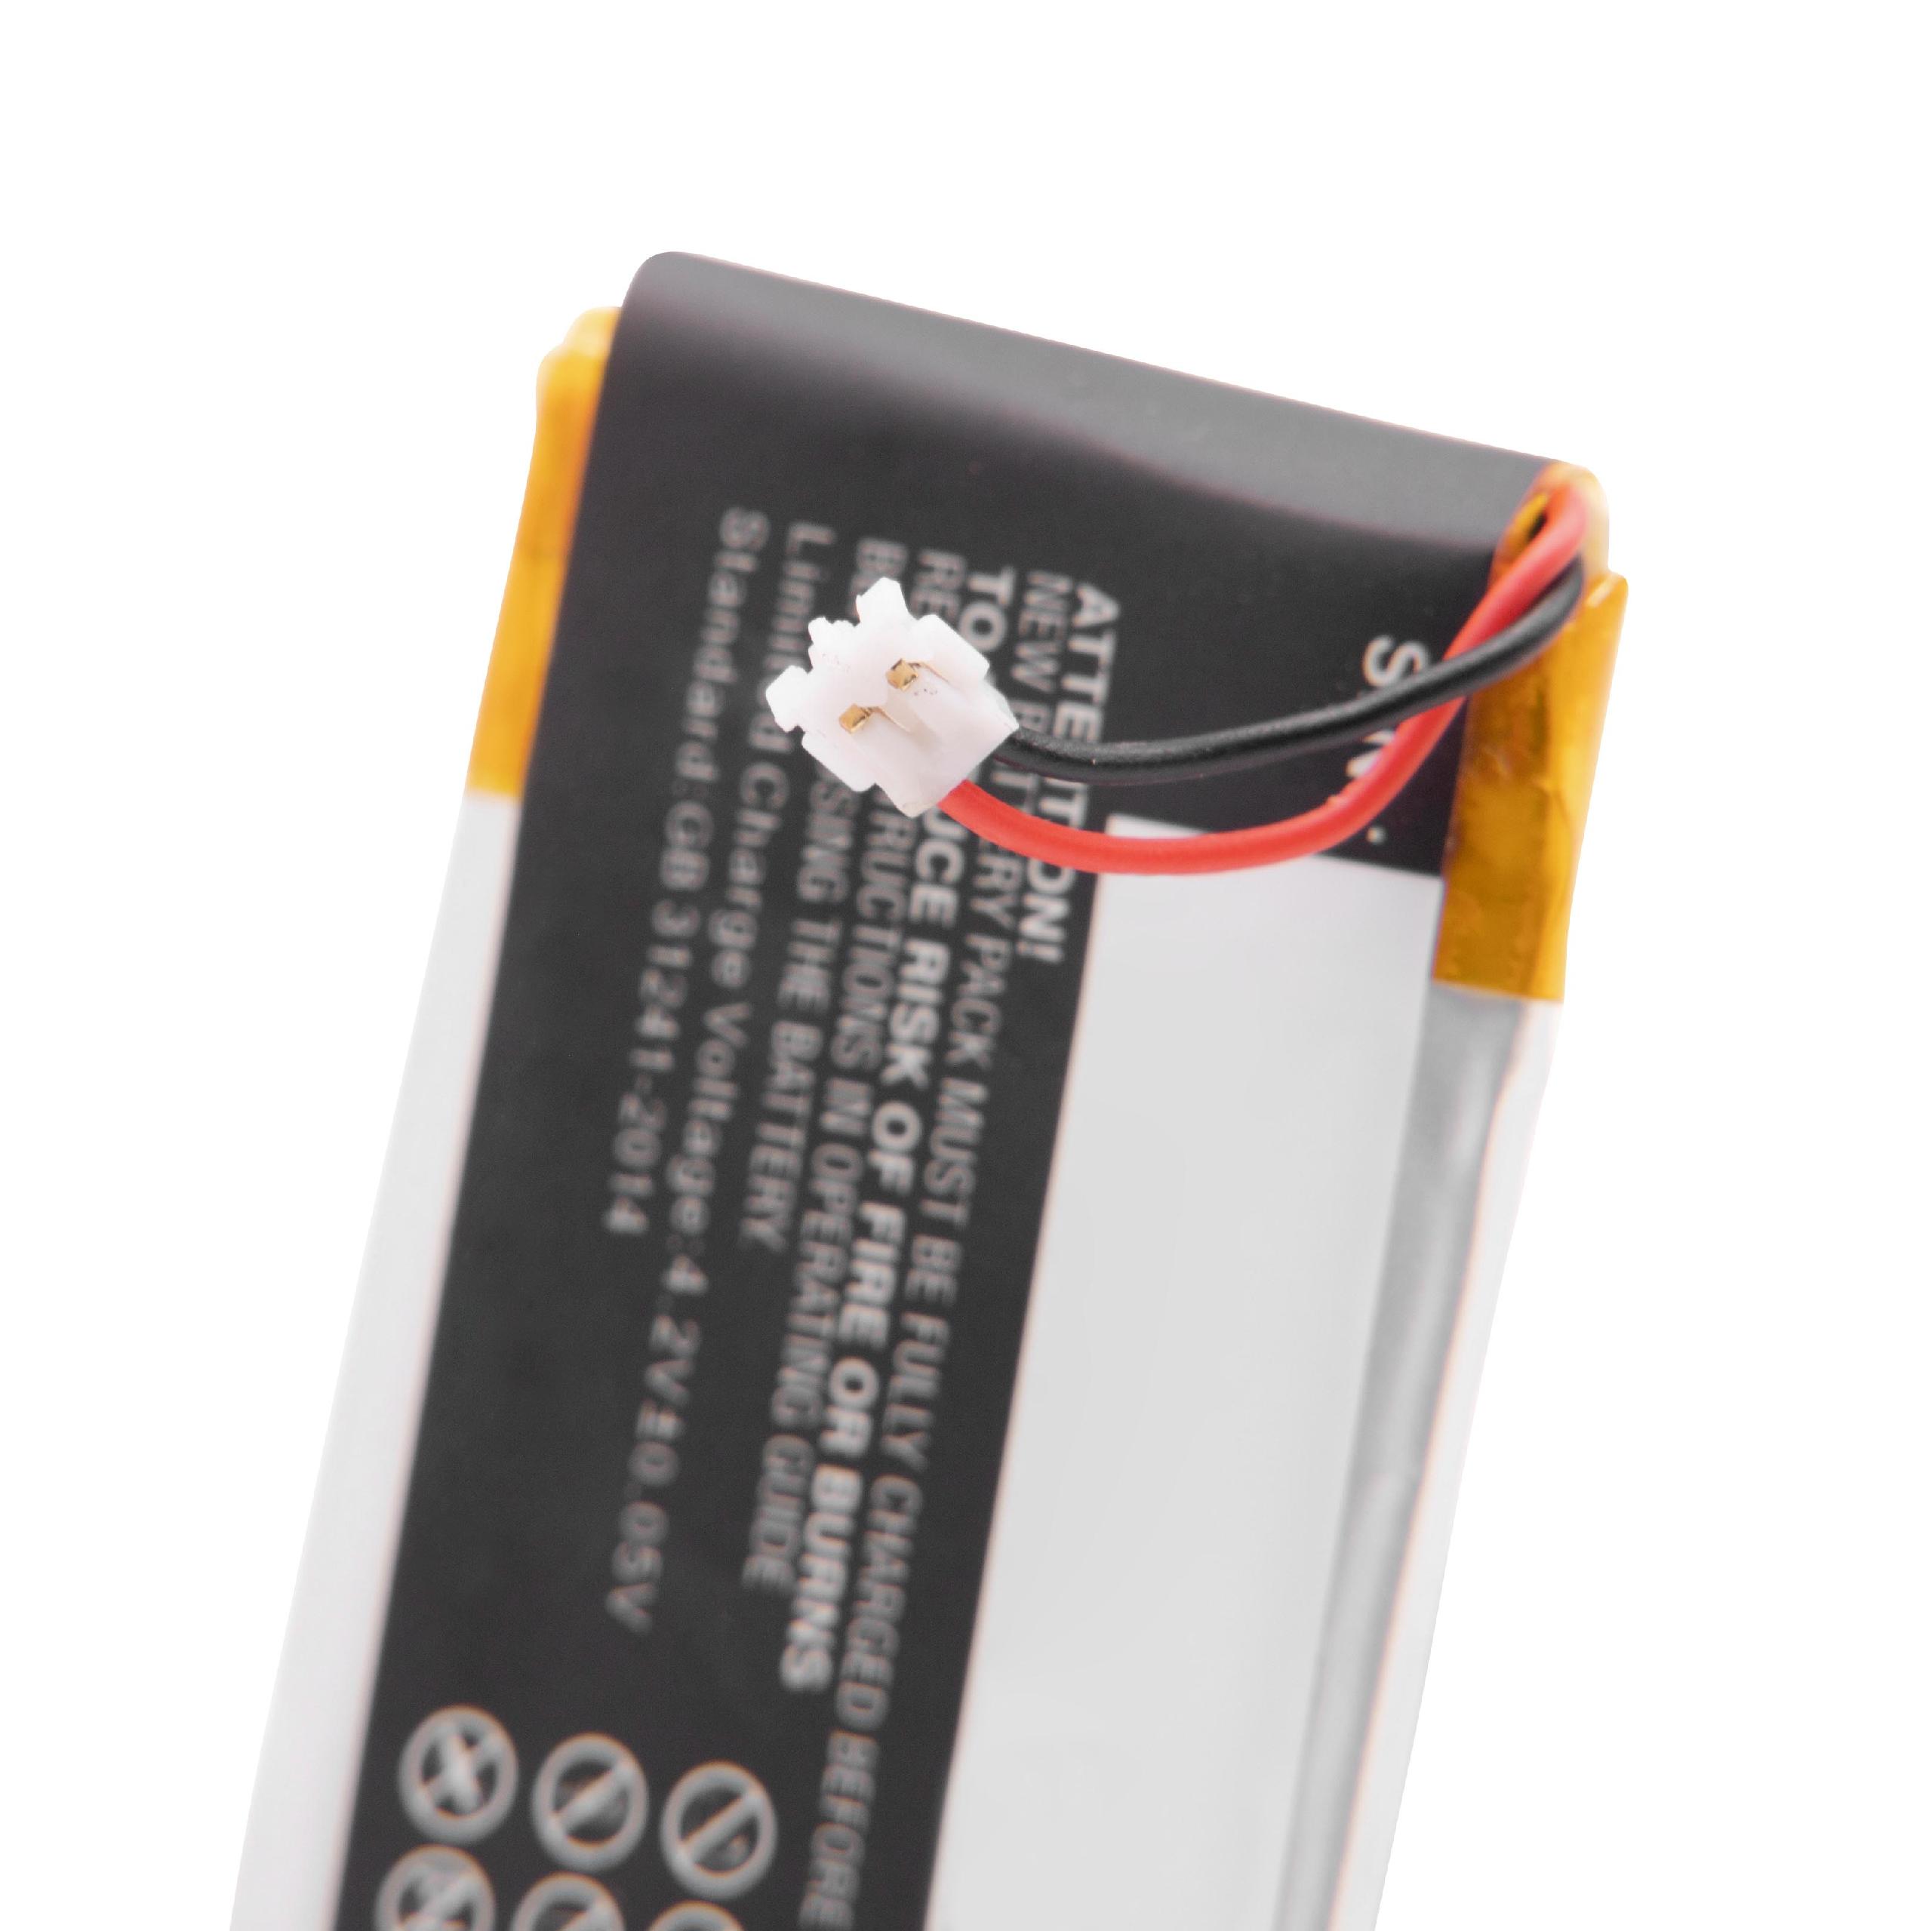 Batterie remplace Garmin 361-00097-00 pour montre connectée - 230mAh 3,7V Li-polymère